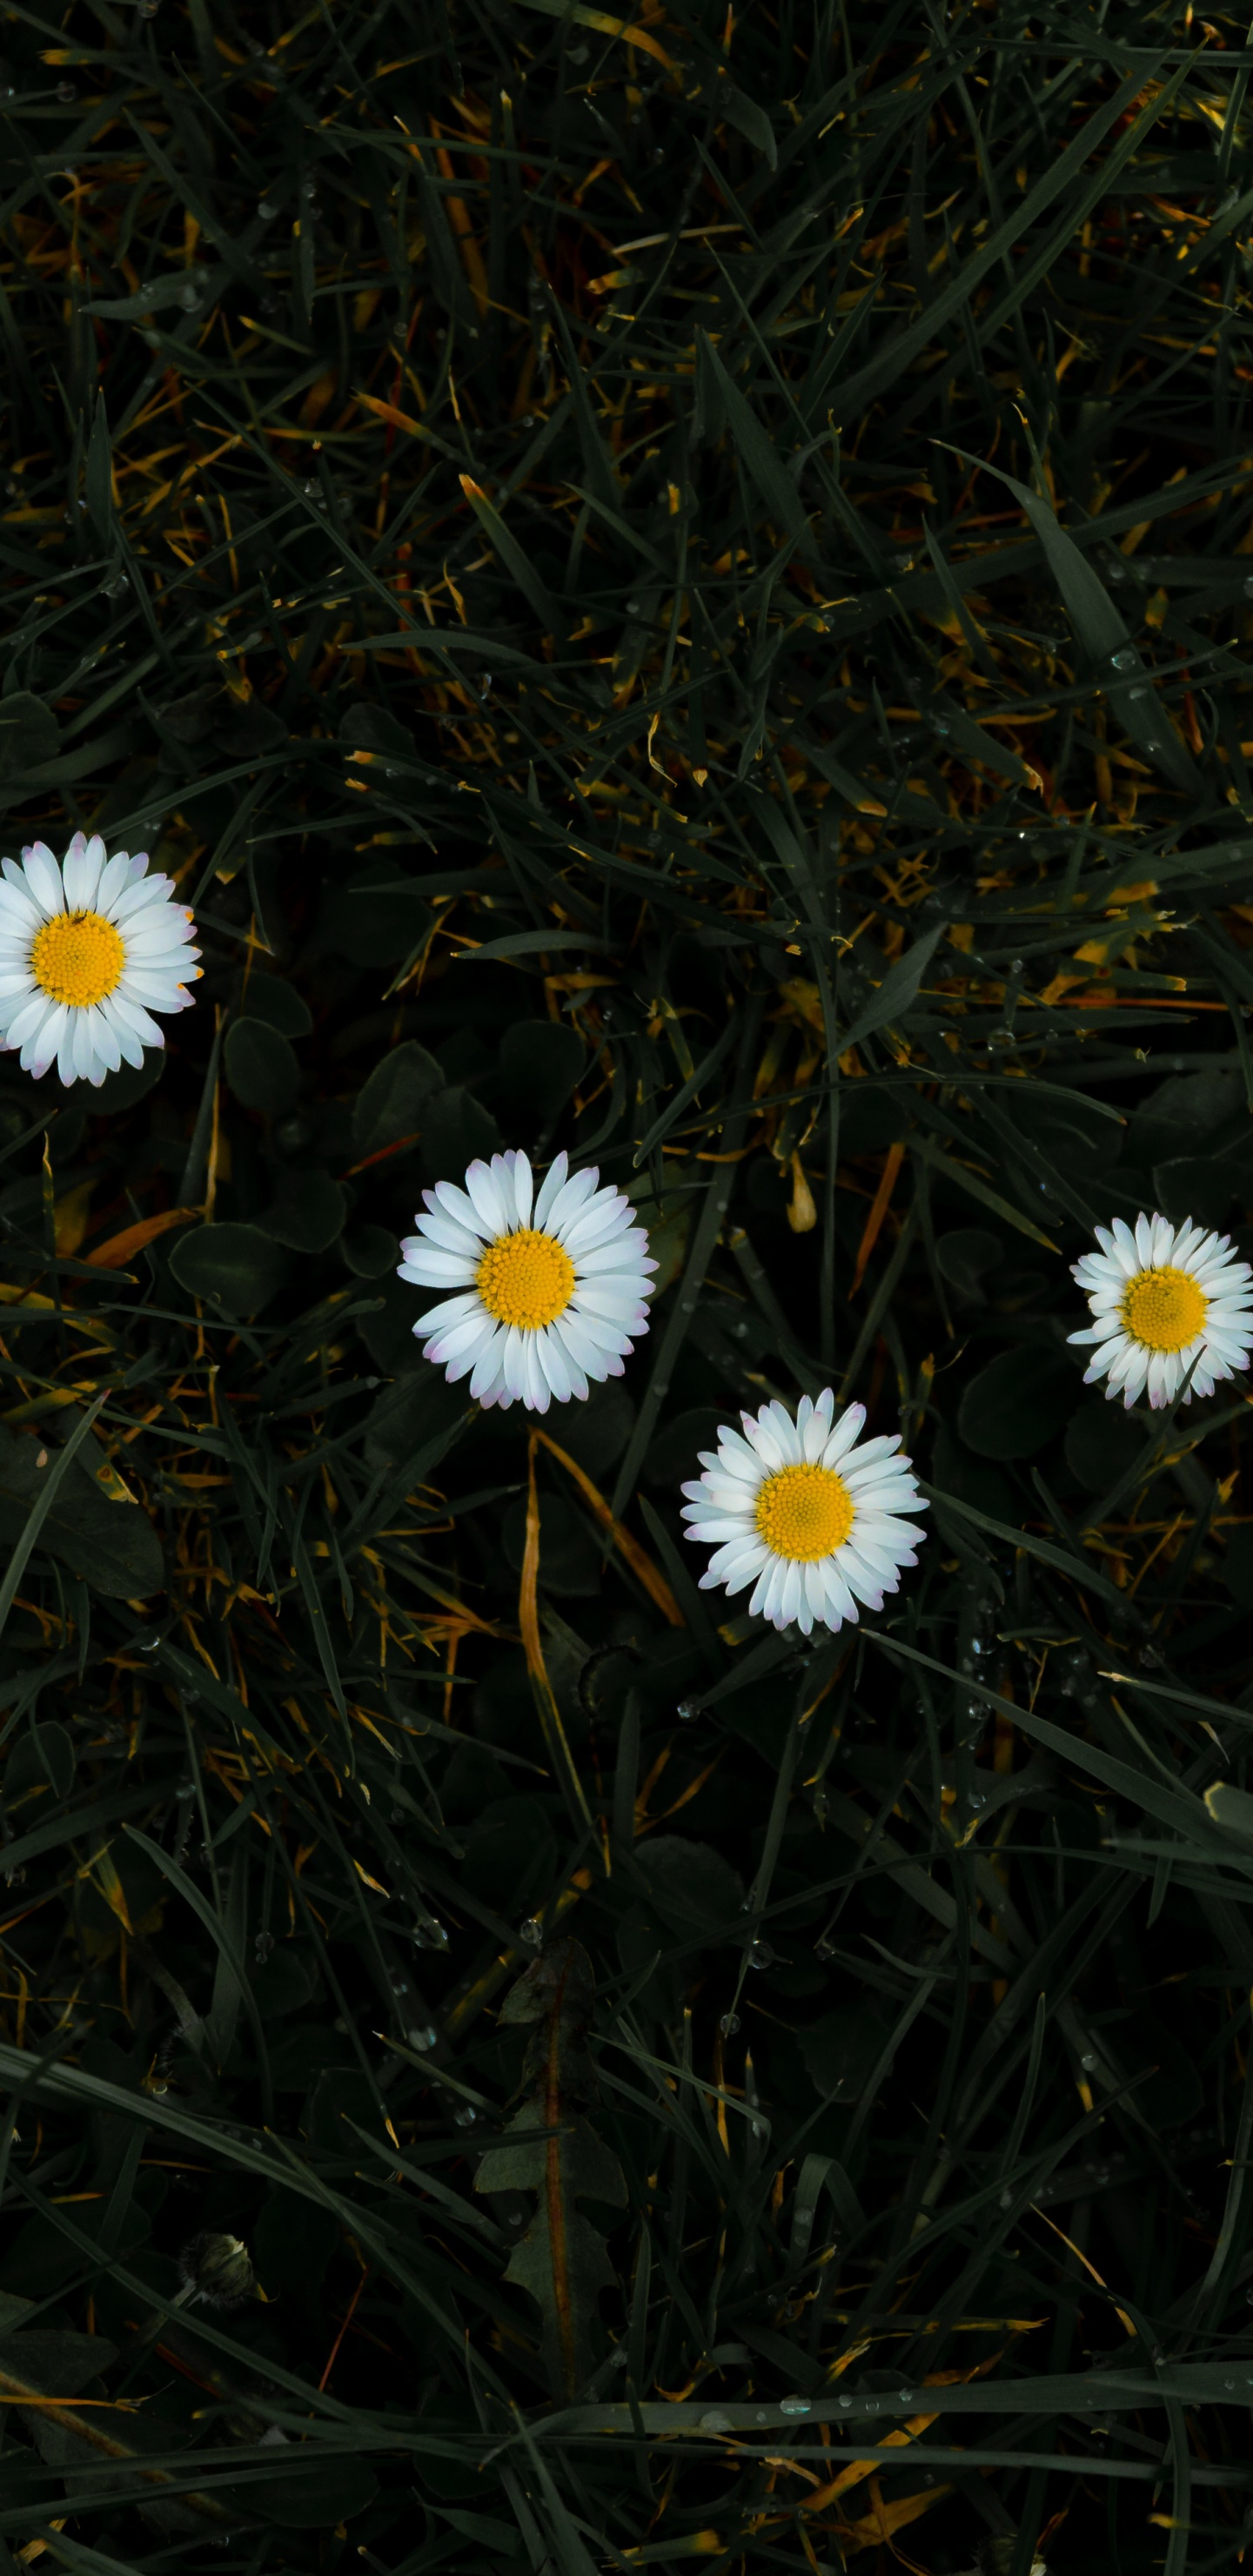 Tagsüber Blühen Weiße Gänseblümchen. Wallpaper in 1440x2960 Resolution